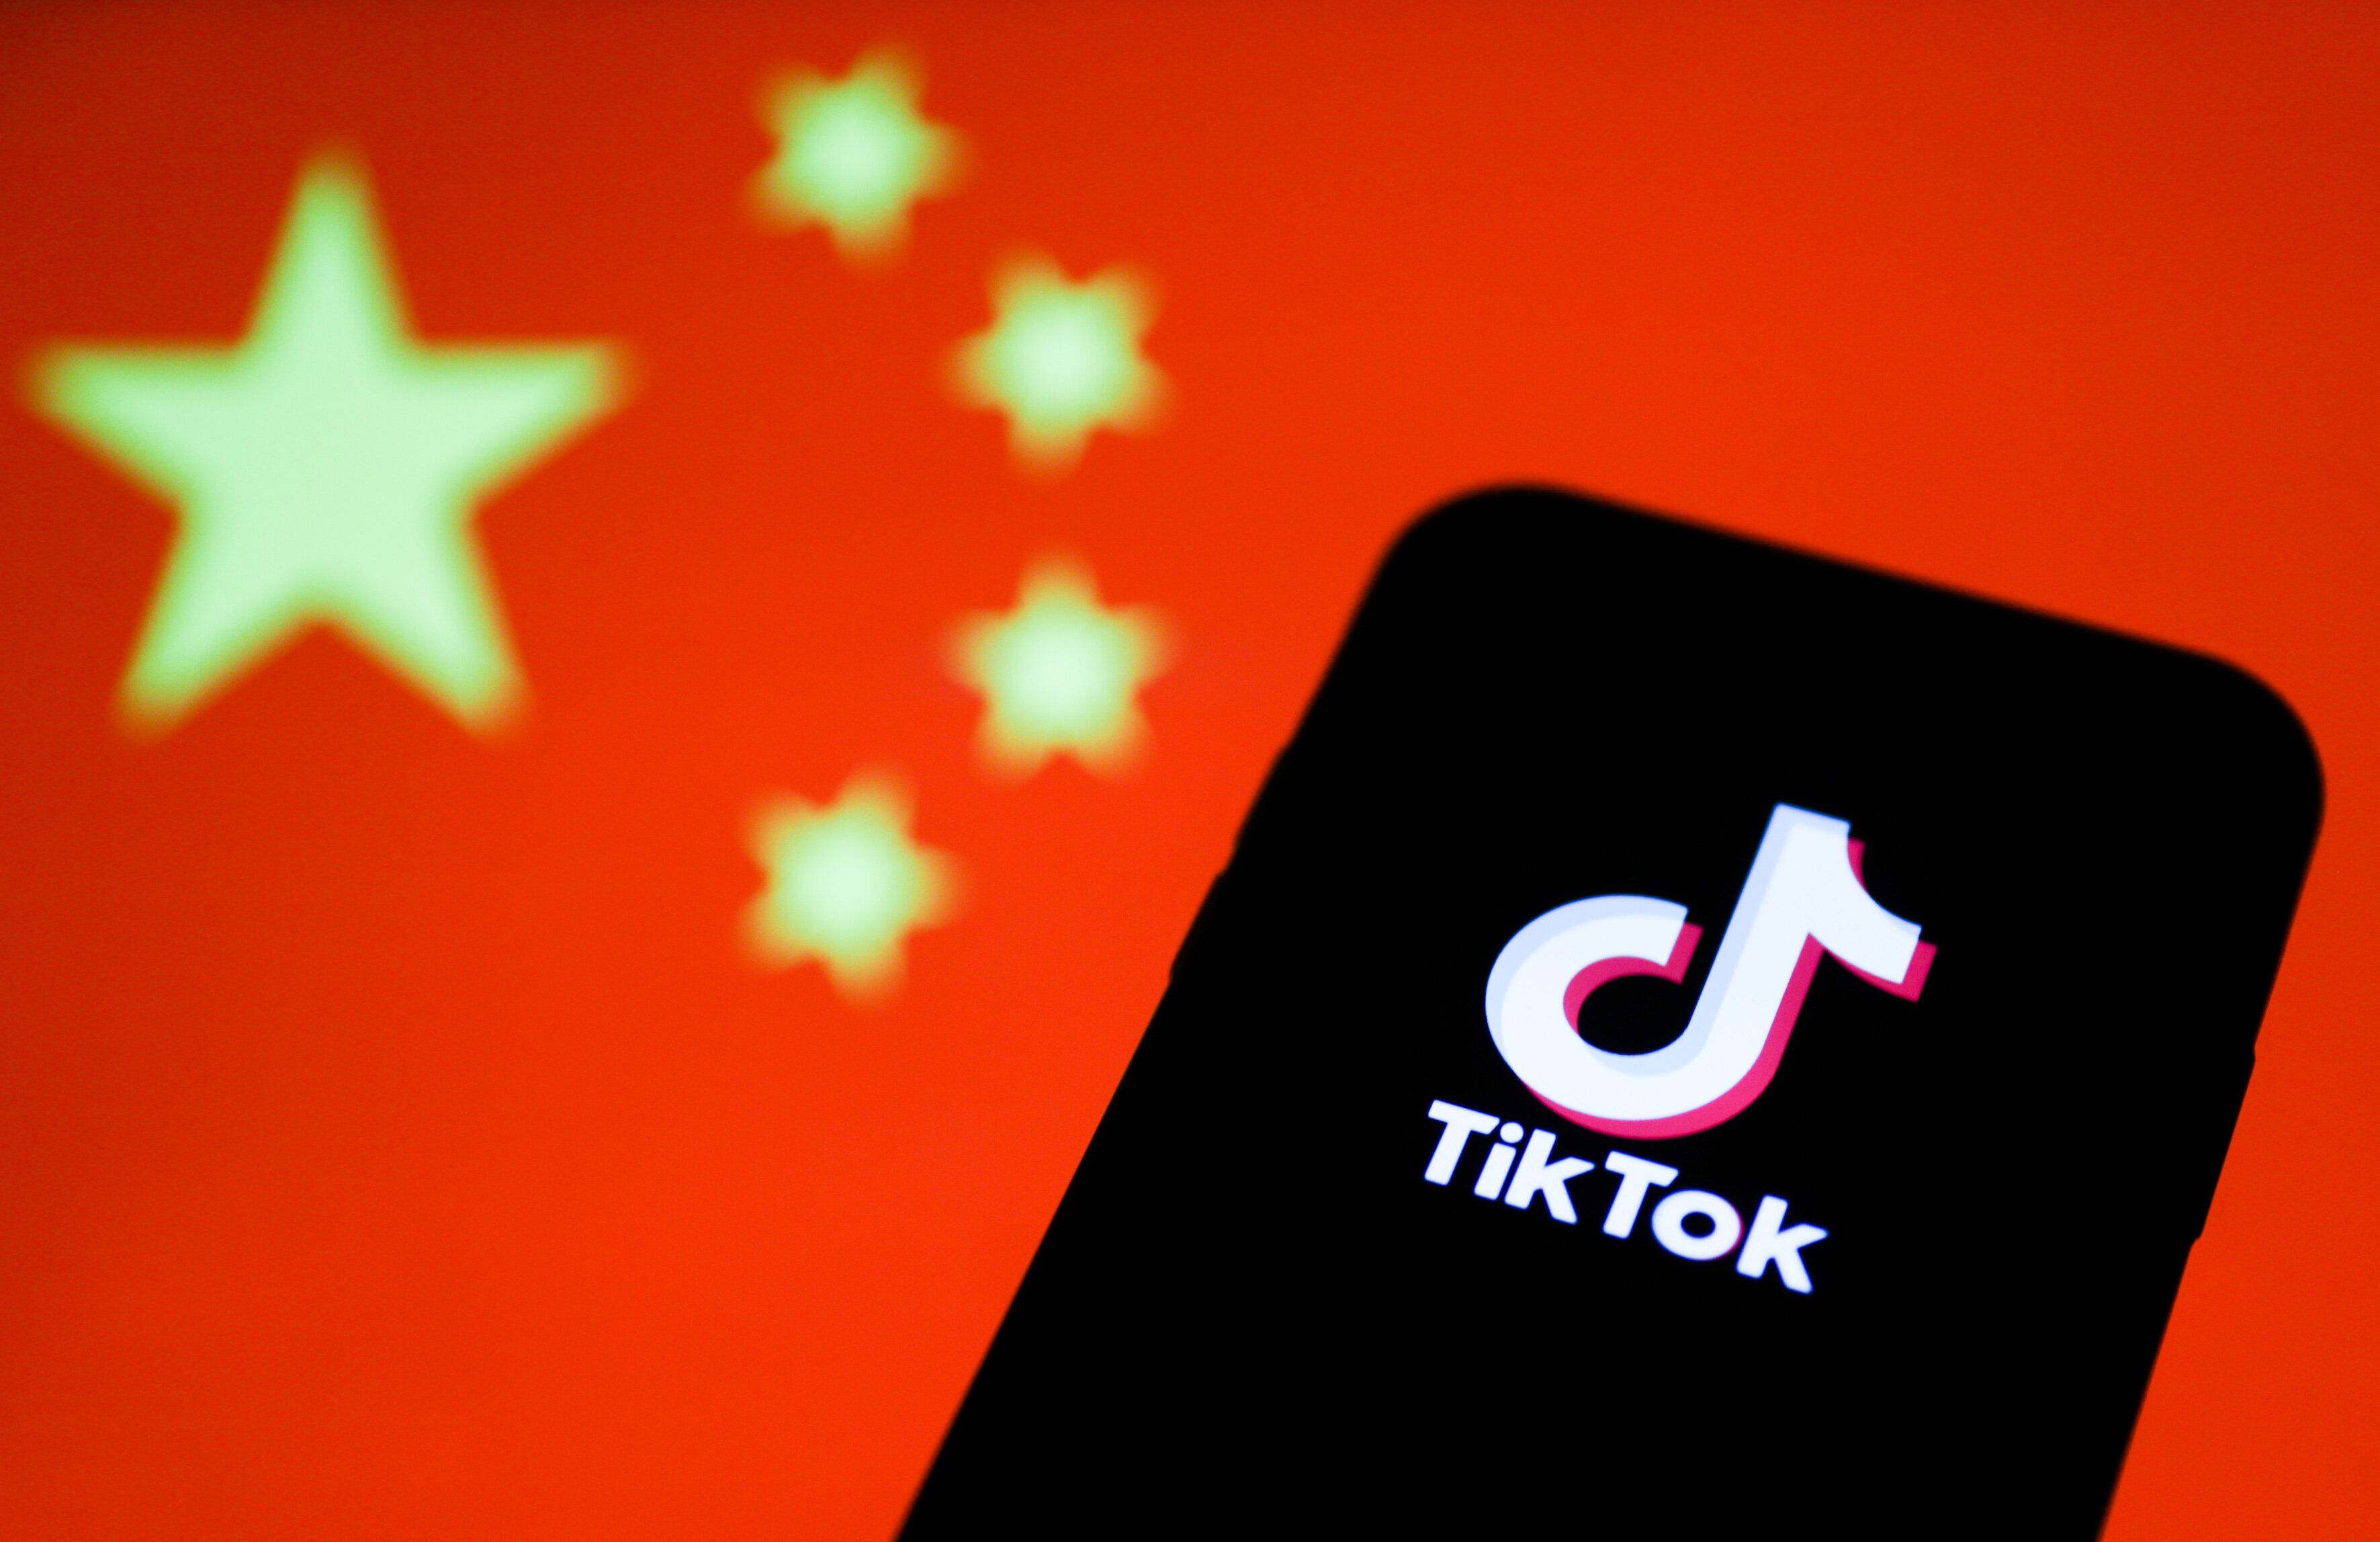 L'entreprise TikTok fait l'objet d'une dispute internationale entre les États-Unis et la Chine,...